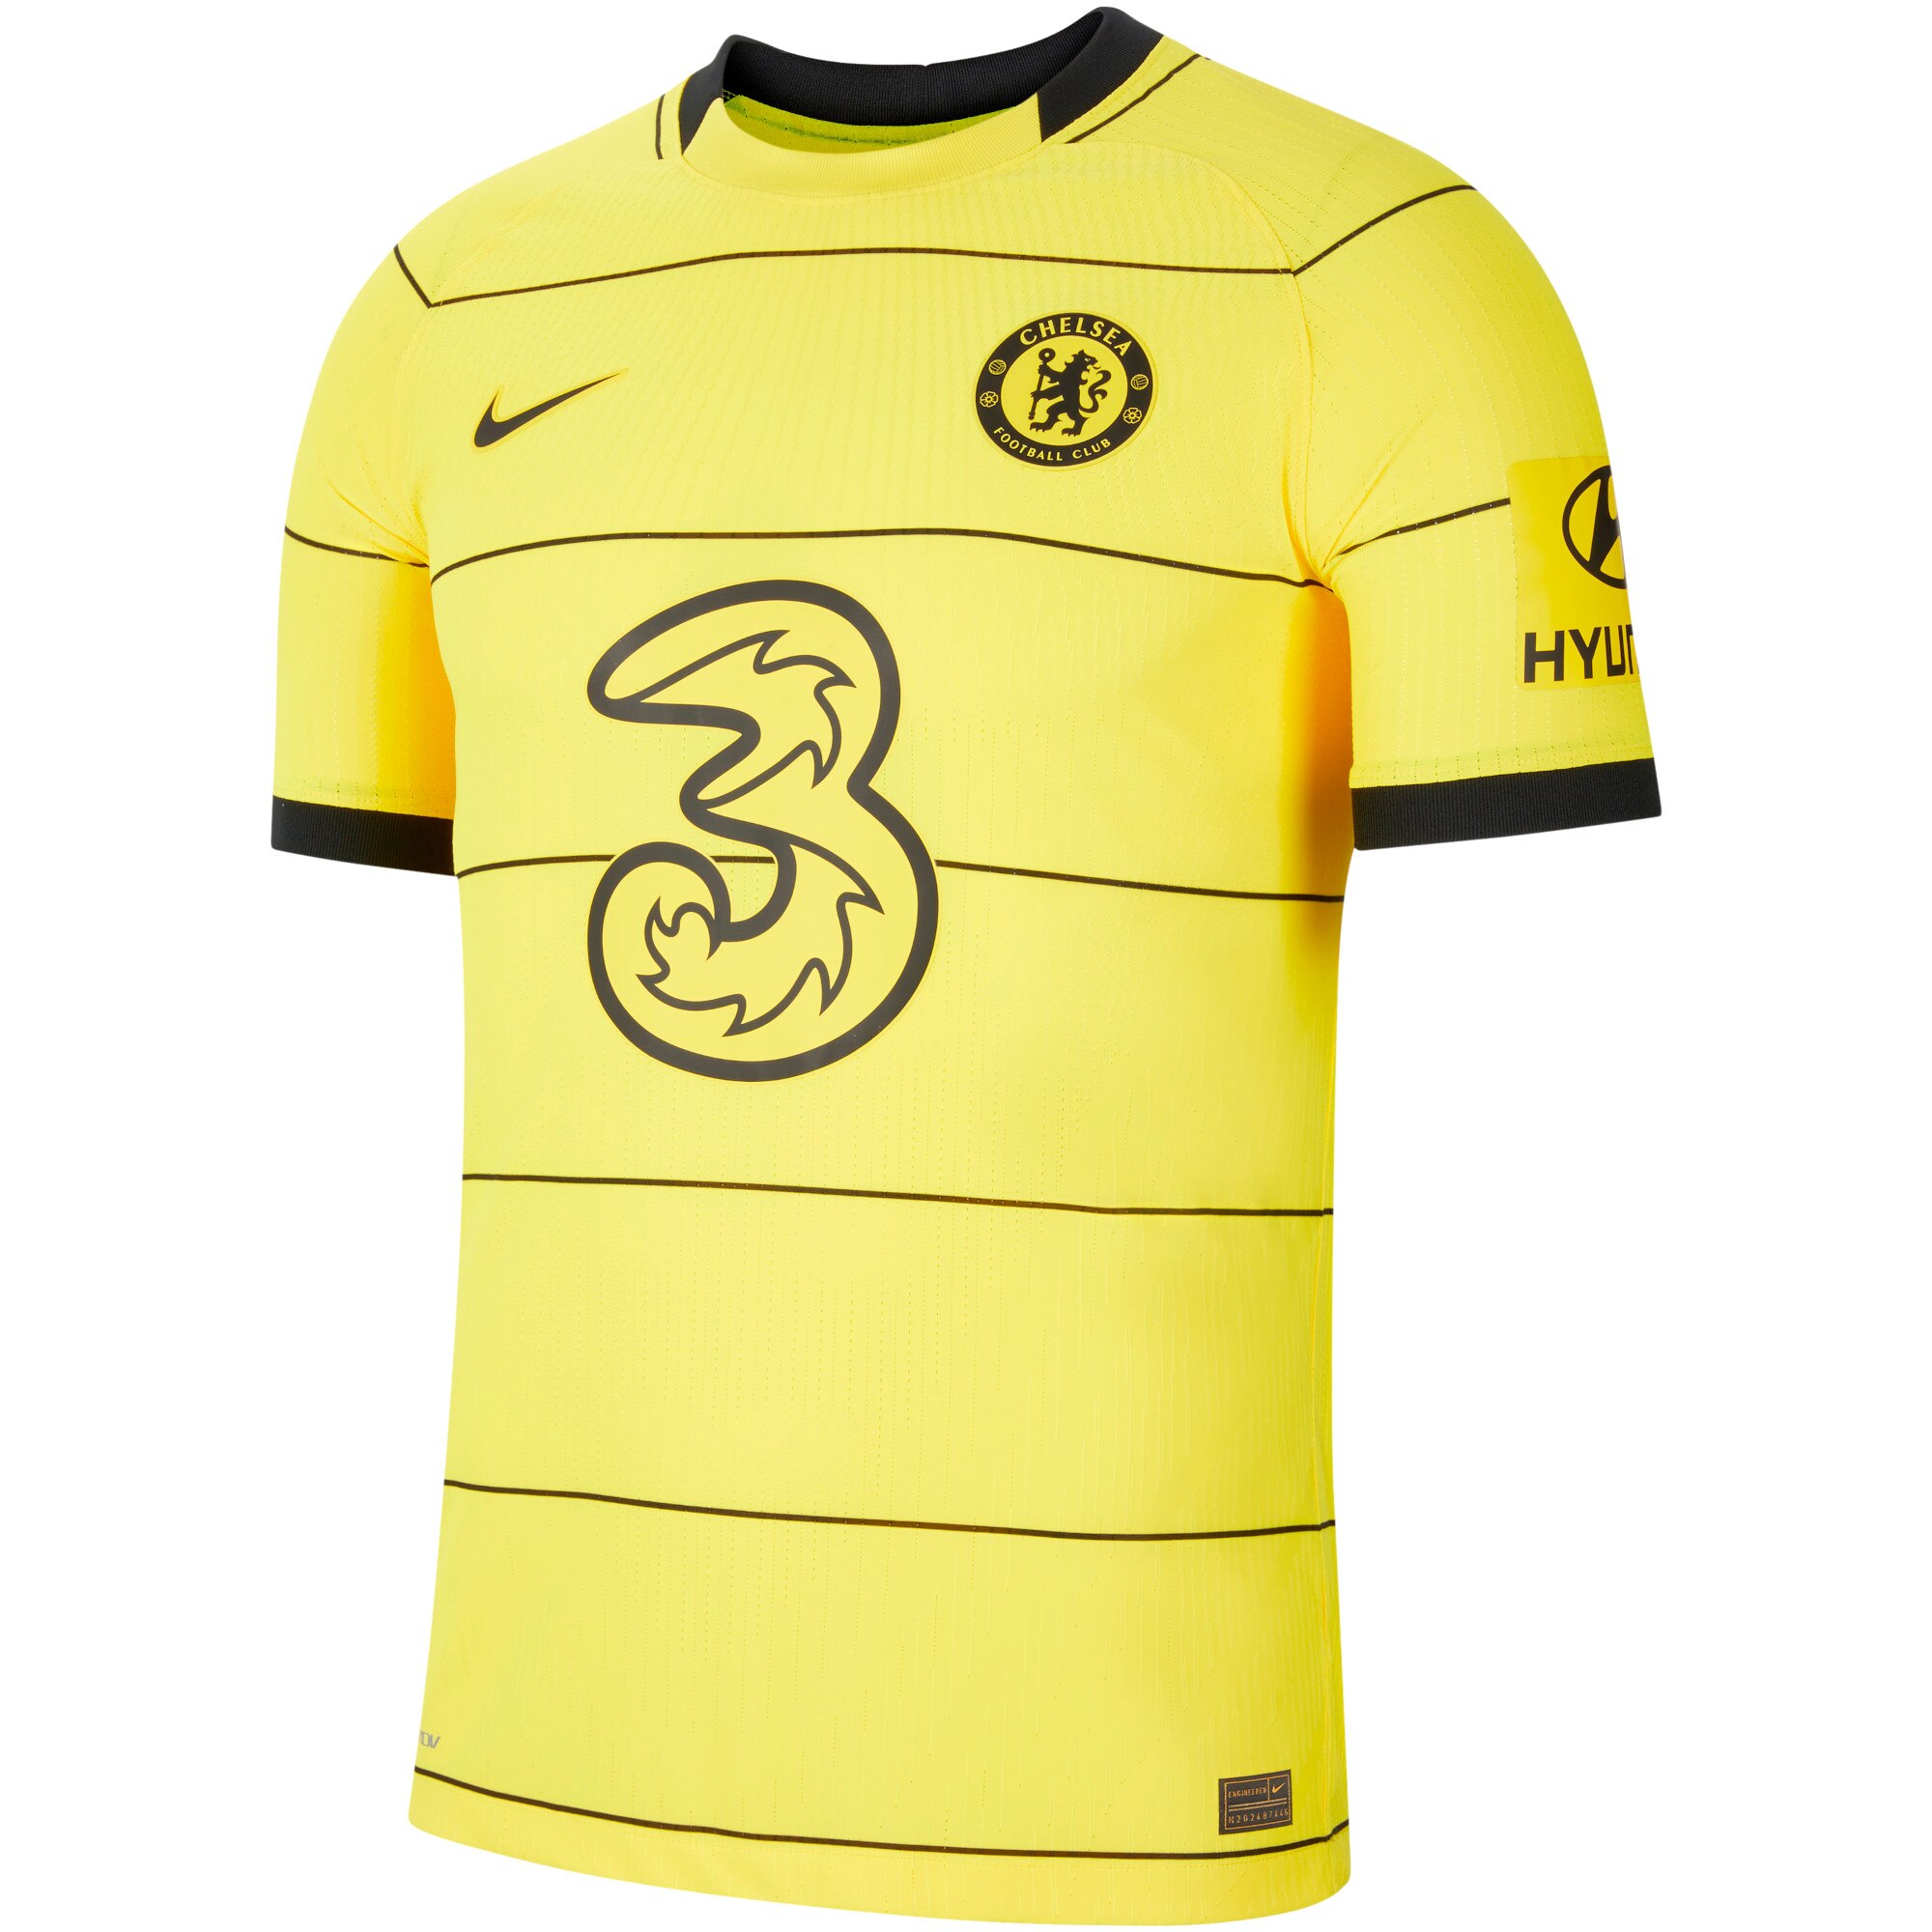 Chelsea Away Vapor Match Shirt 2021-22 with Lukaku 9 printing